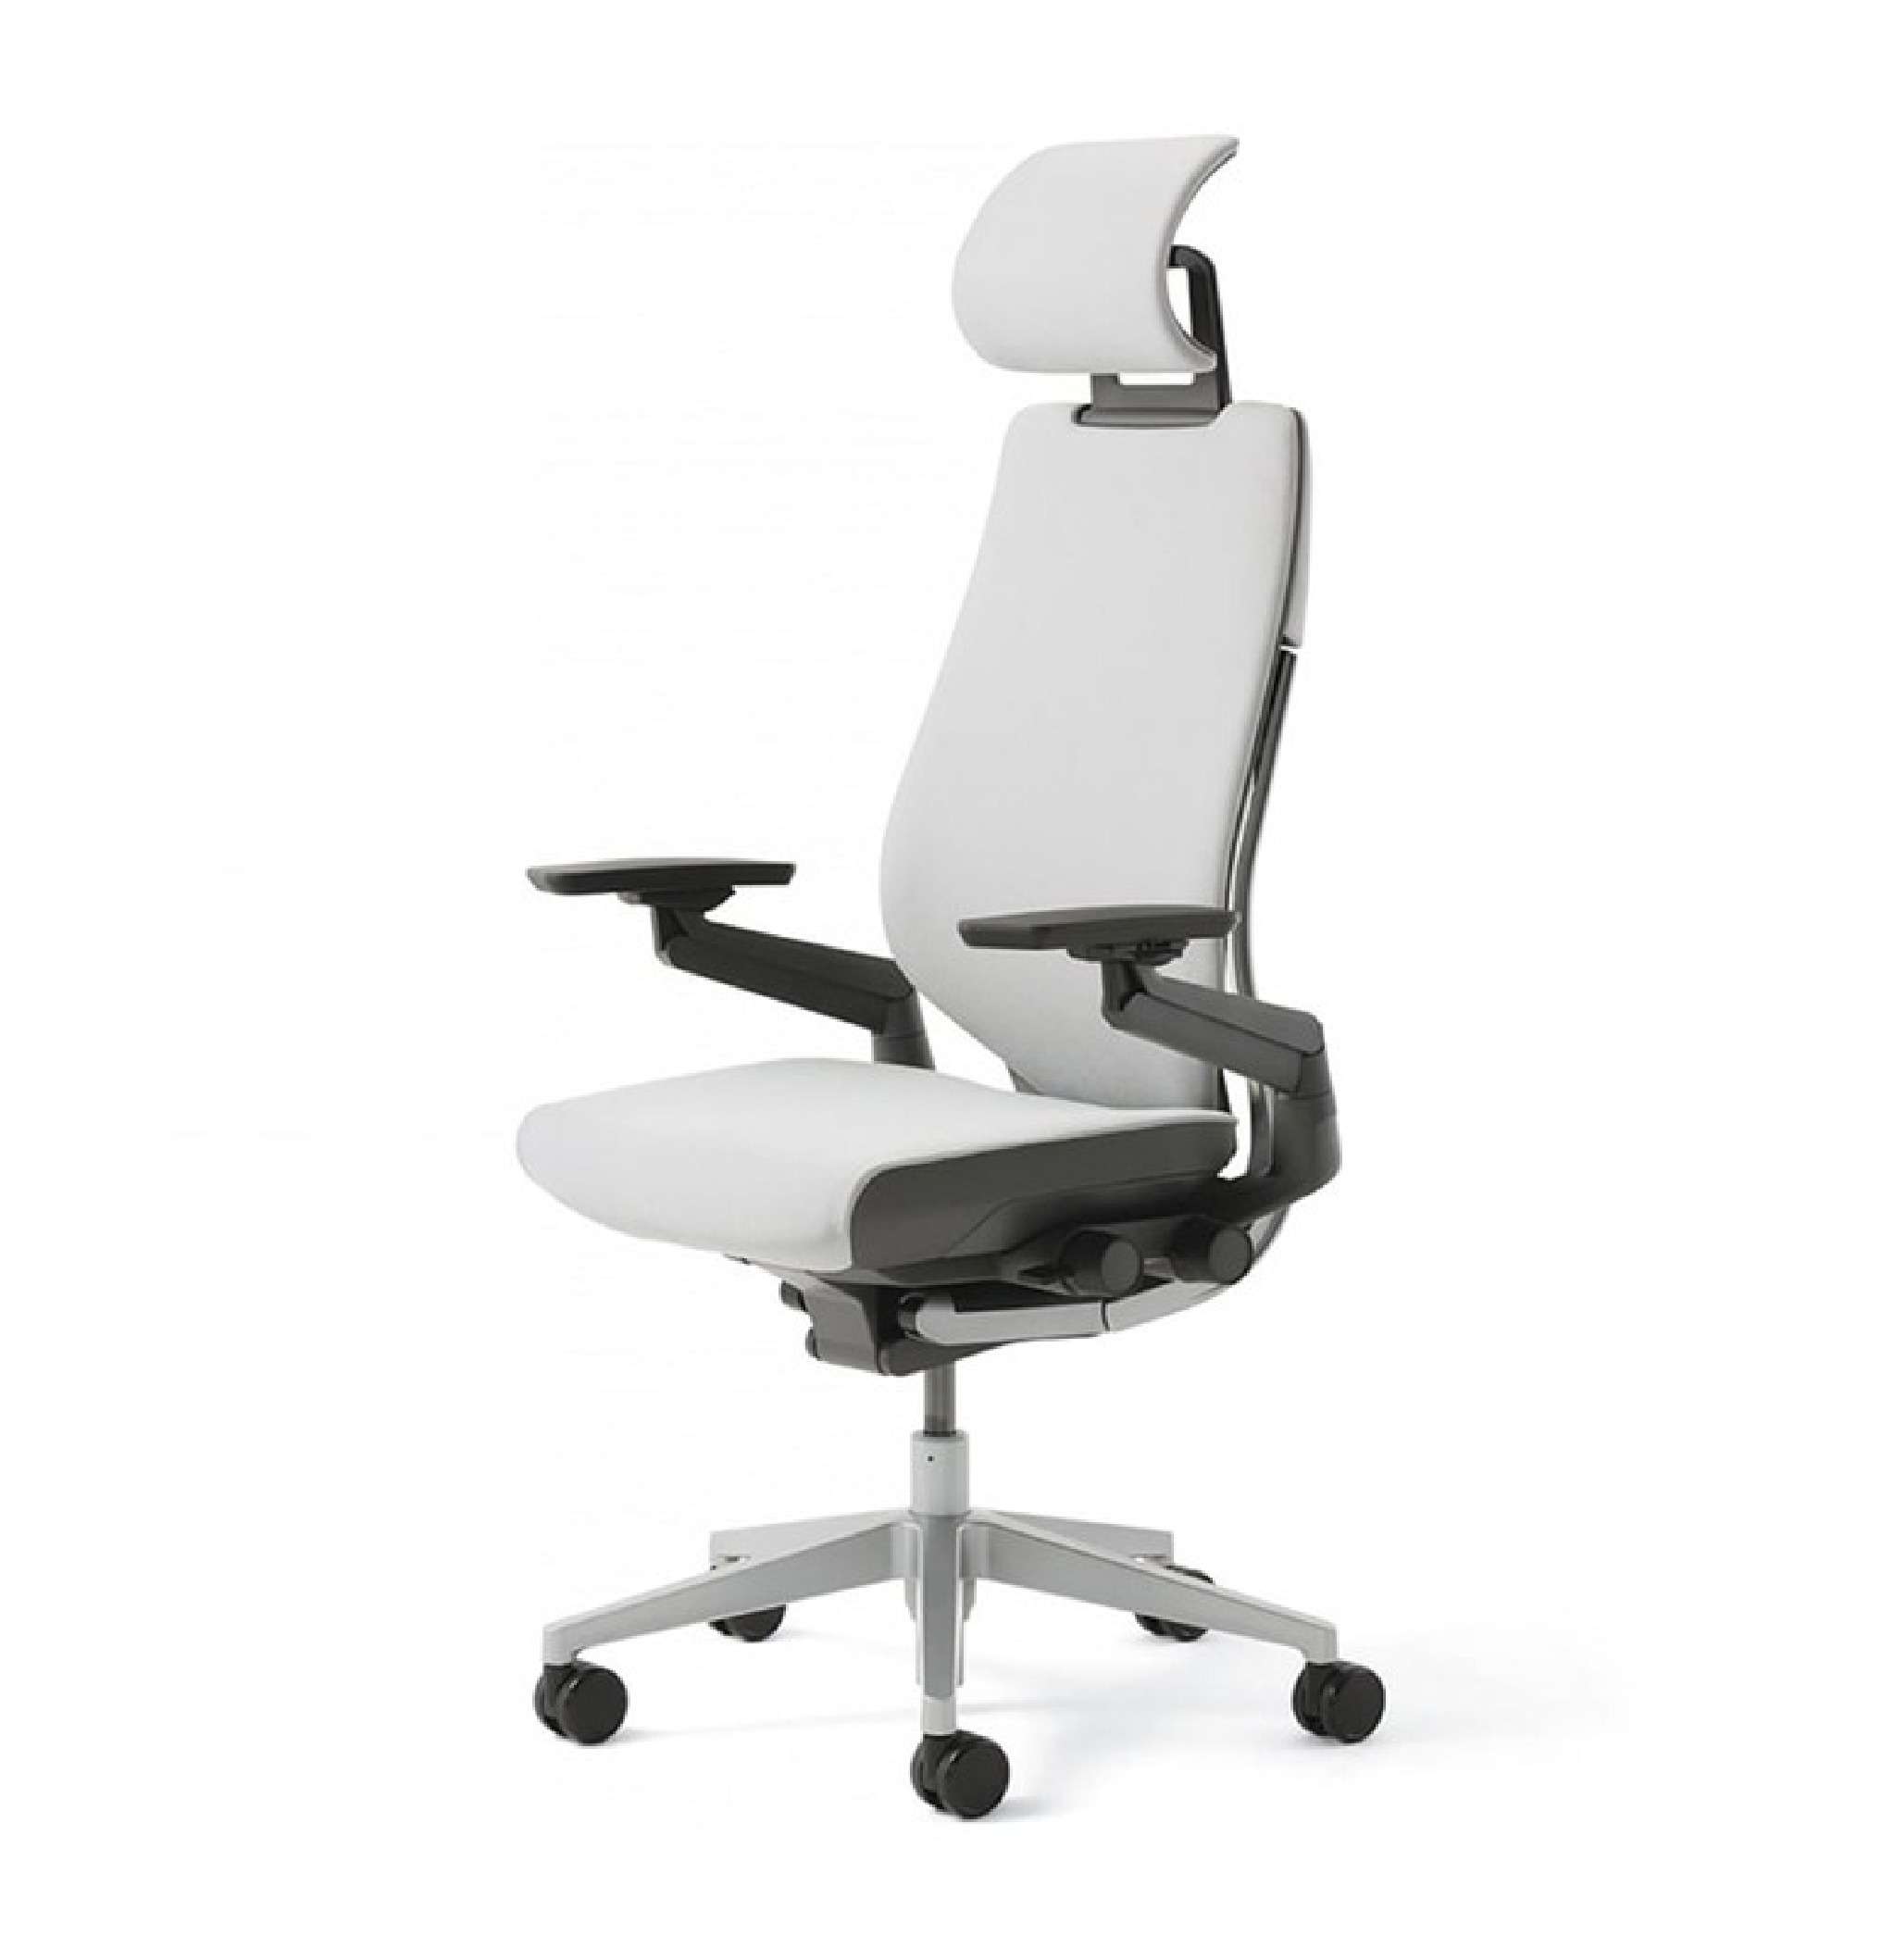 Modernform เก้าอี้ Steelcase ergonomic รุ่น Gesture พนักพิงสูง แบบ Wrap